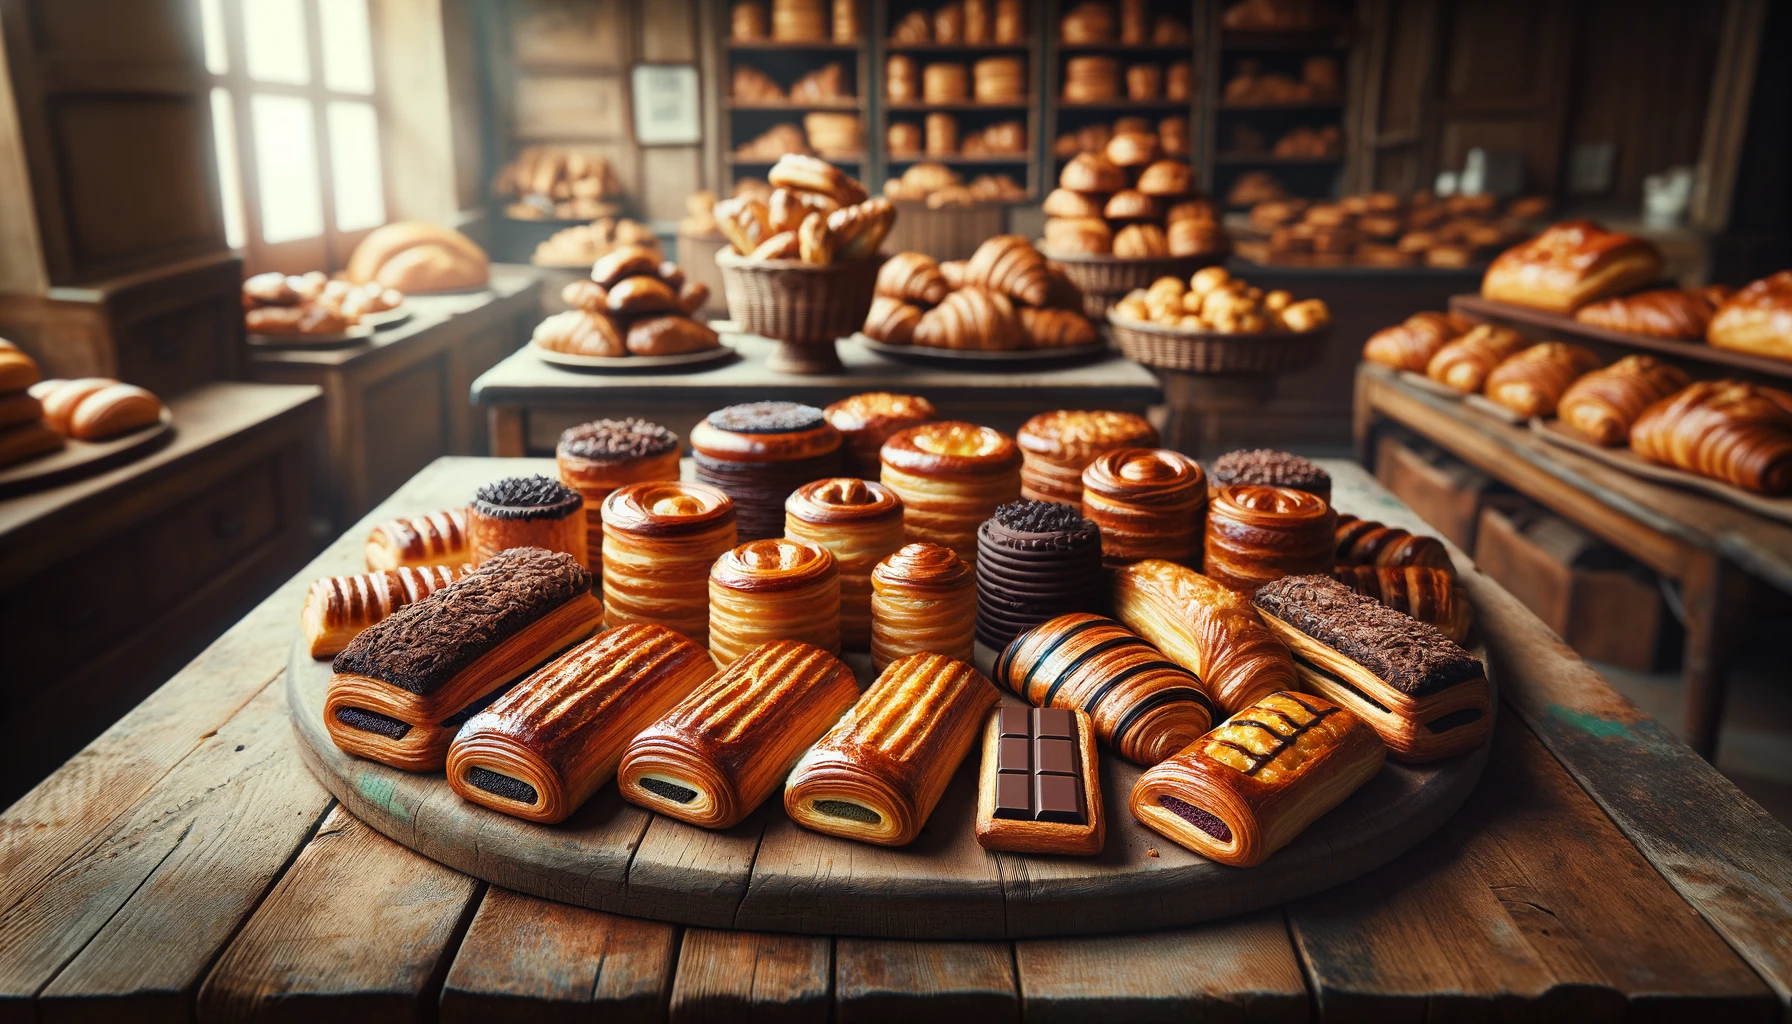 pains au chocolat français classique présentés dans une vitrine de boulangeries